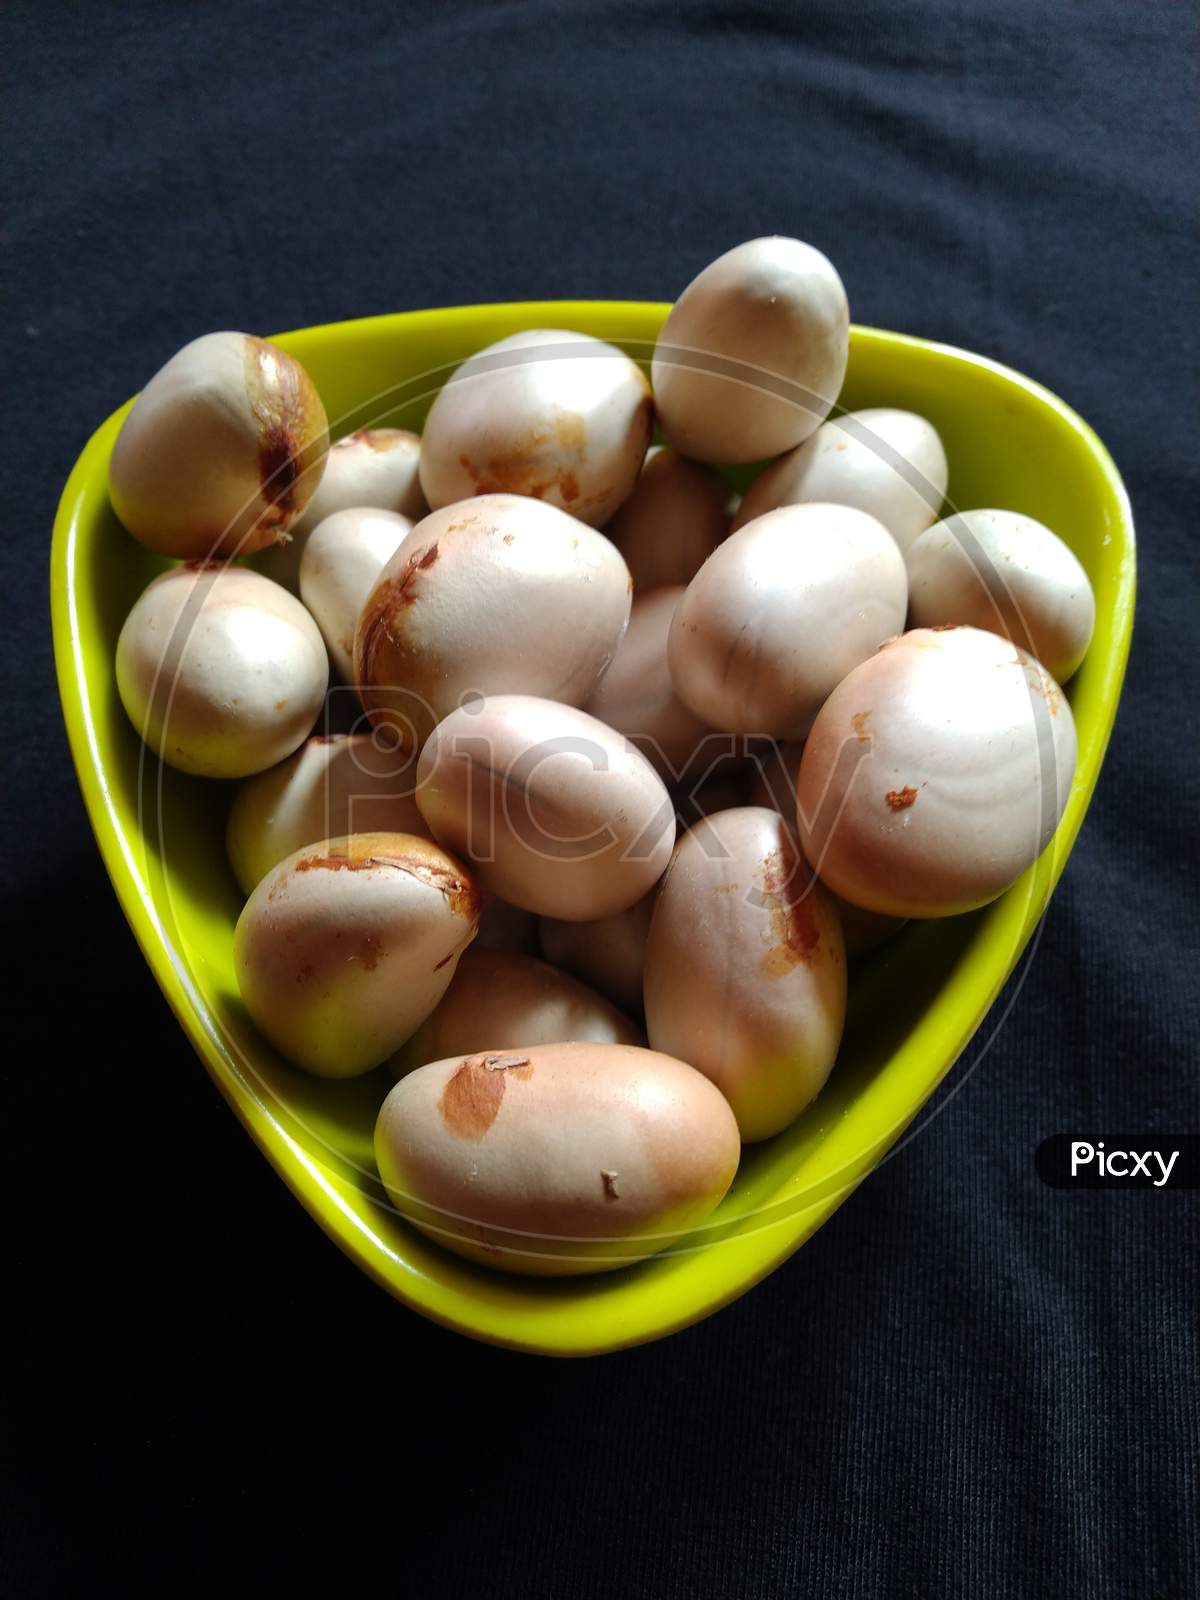 A close up view of Jackfruit seeds